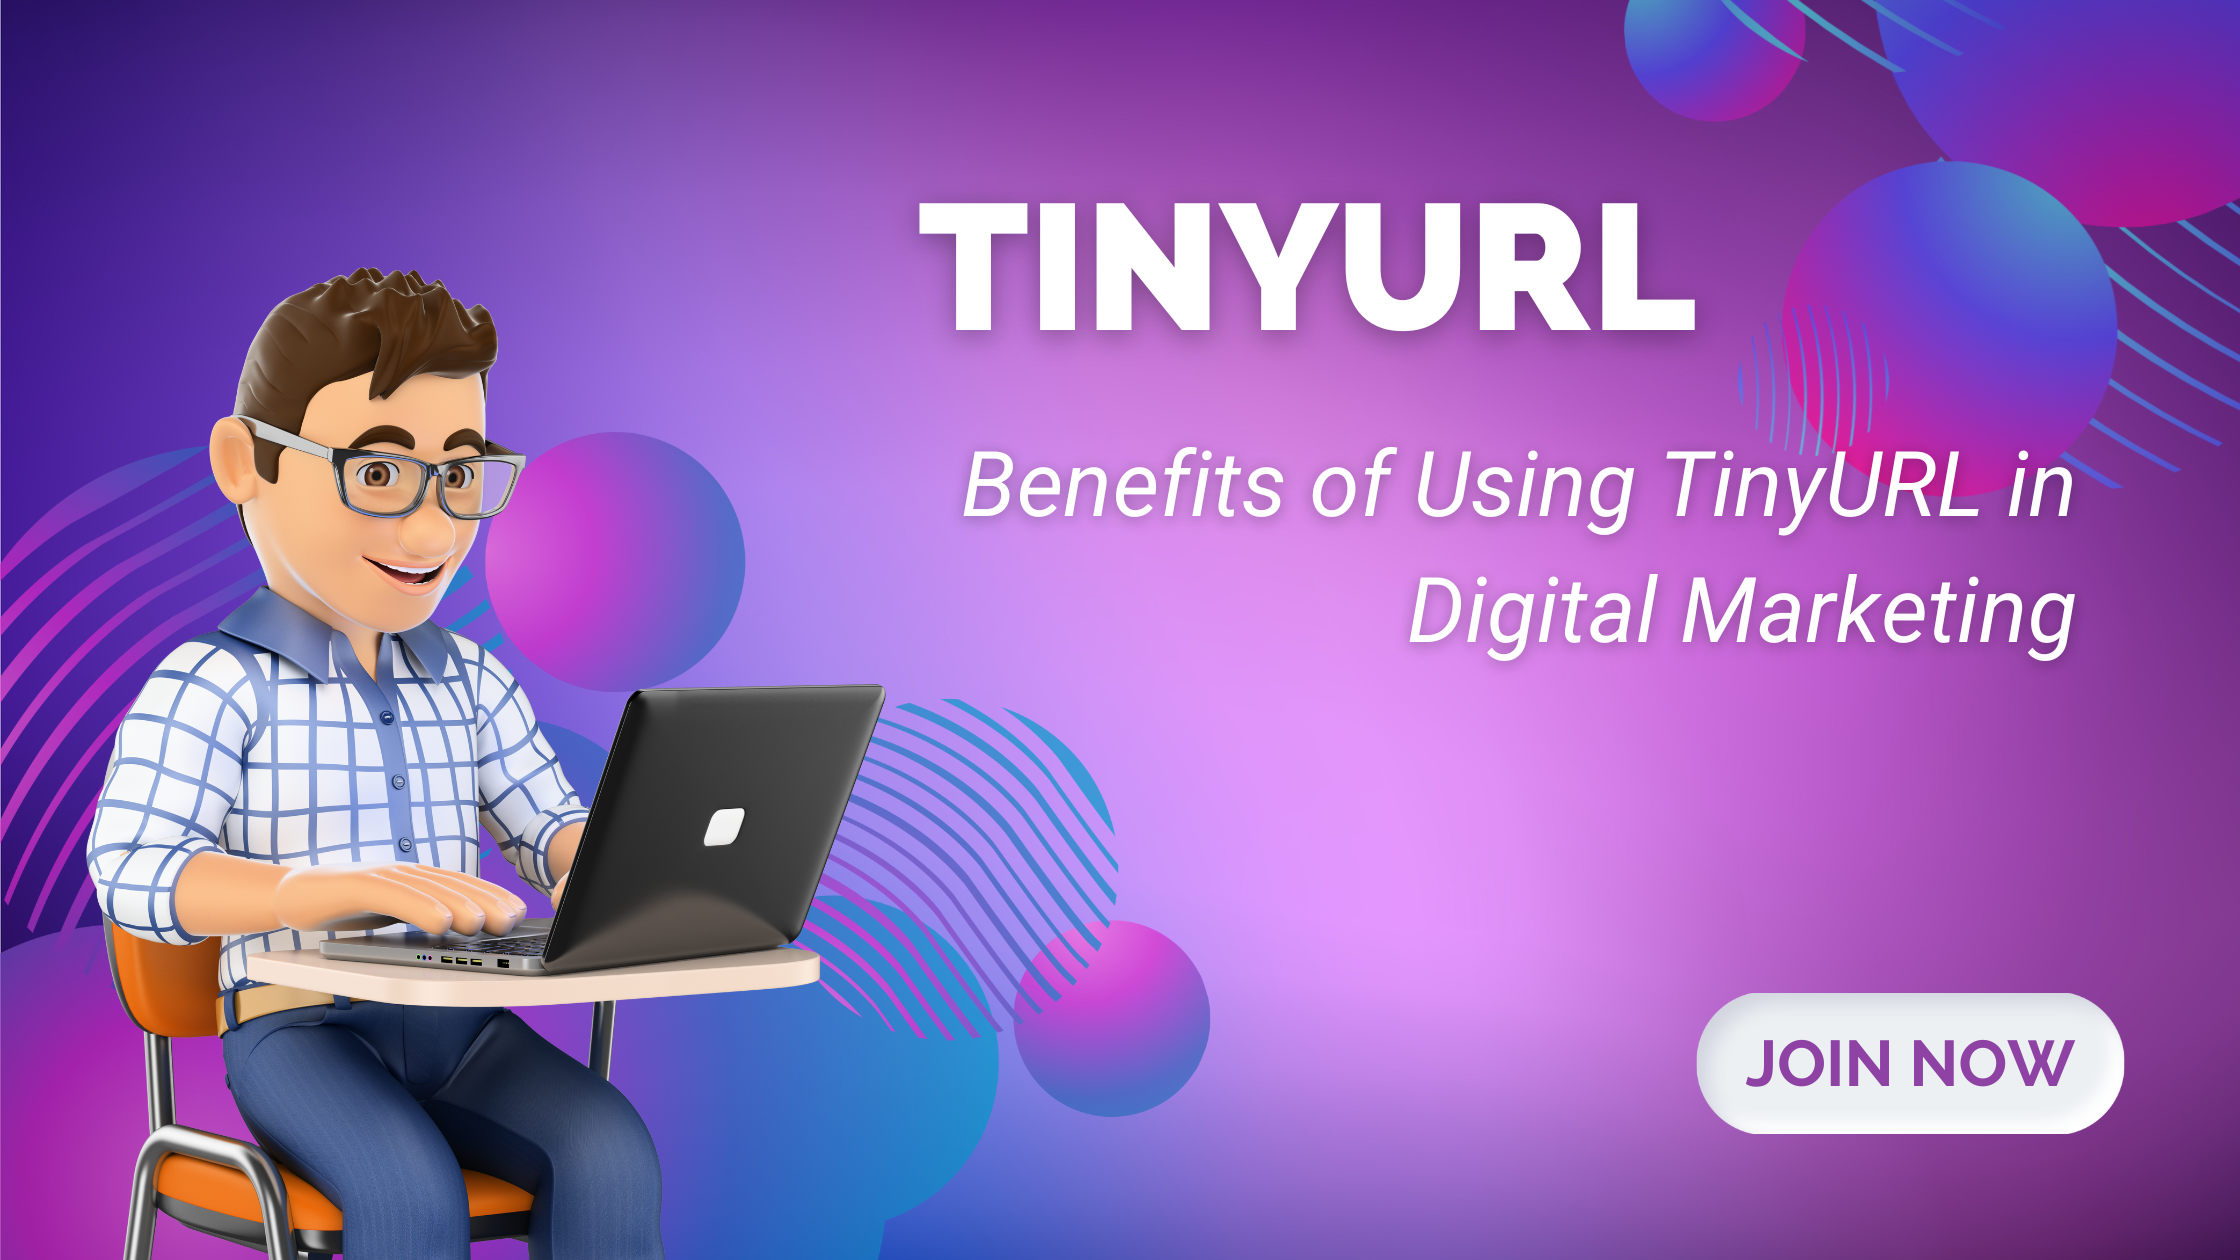 TinyURLcom: What is TinyURL? Benefits of Using TinyURLcom in Digital Marketing